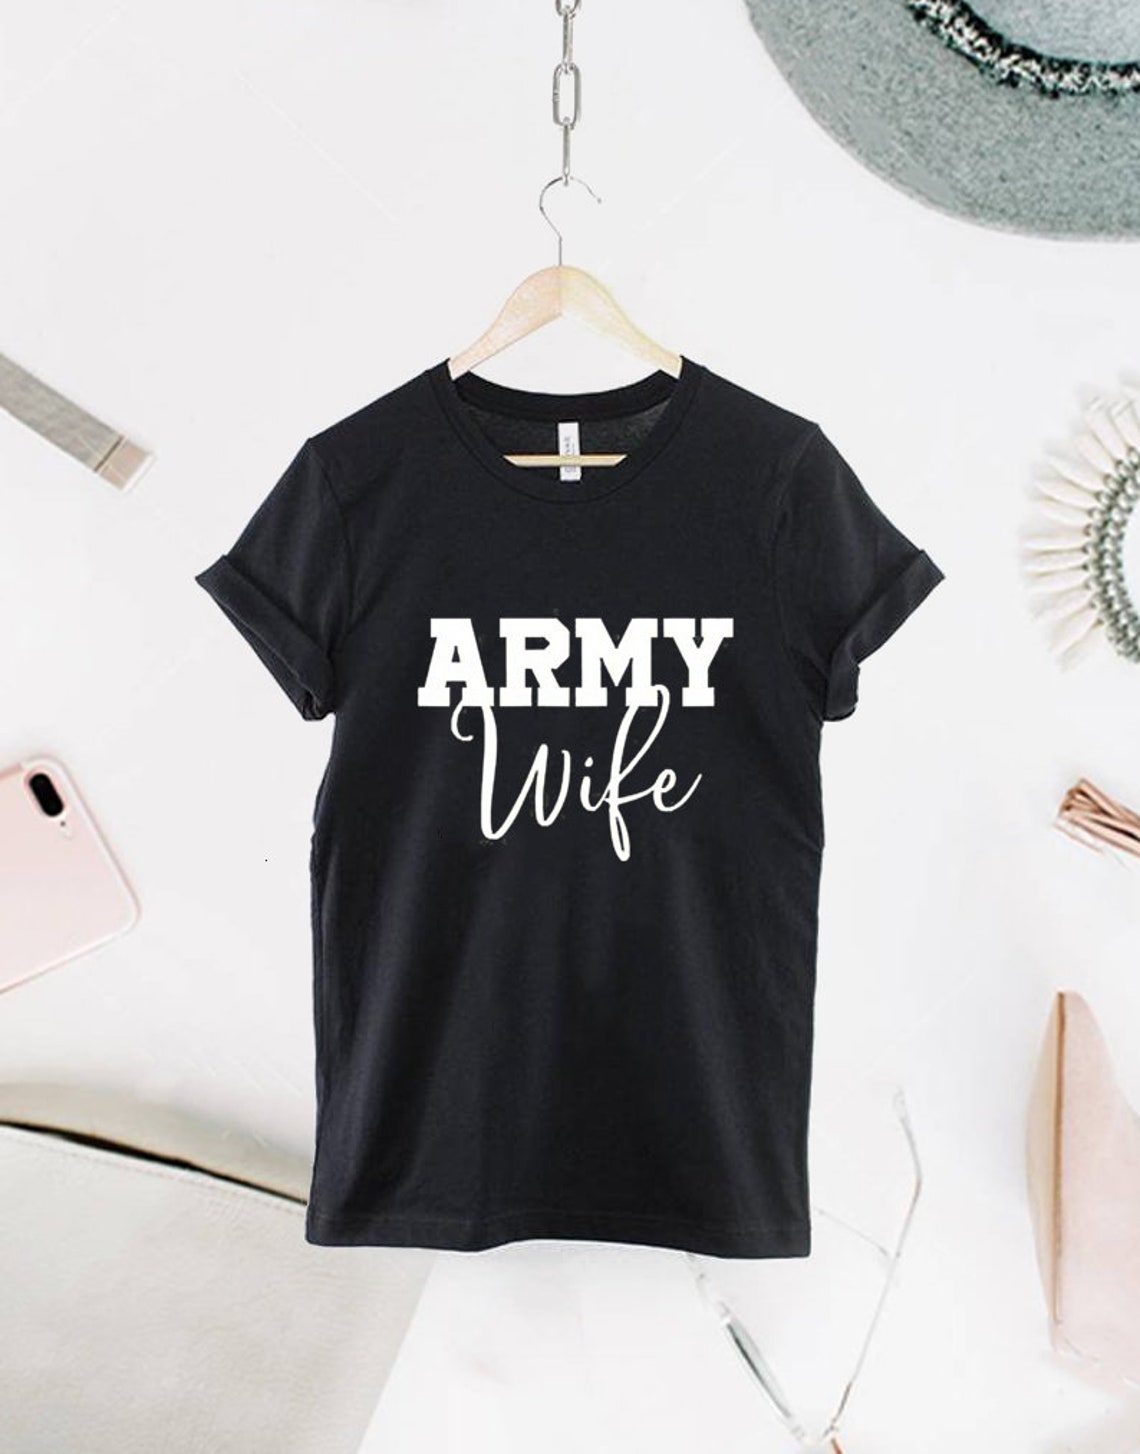 Army Wife Shirt Army Wife Tee Army Wifey T-Shirt Valetine | Etsy